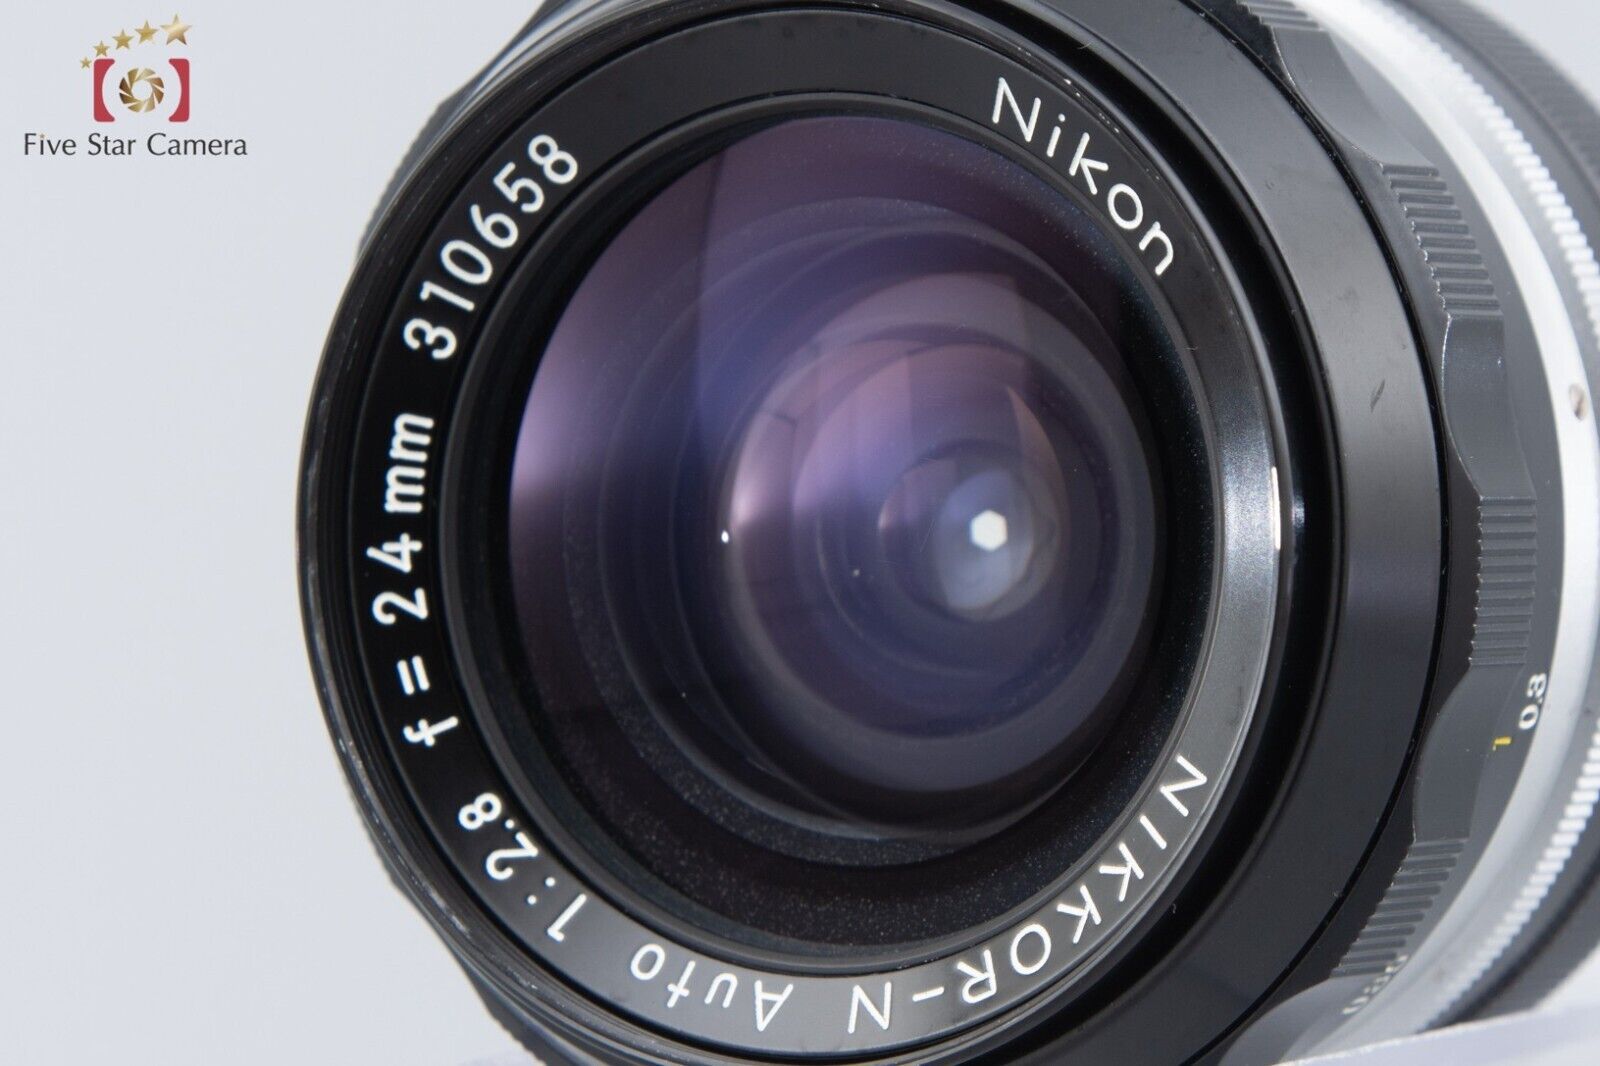 Nikon NIKKOR-N Auto 24mm f/2.8 Non Ai Lens